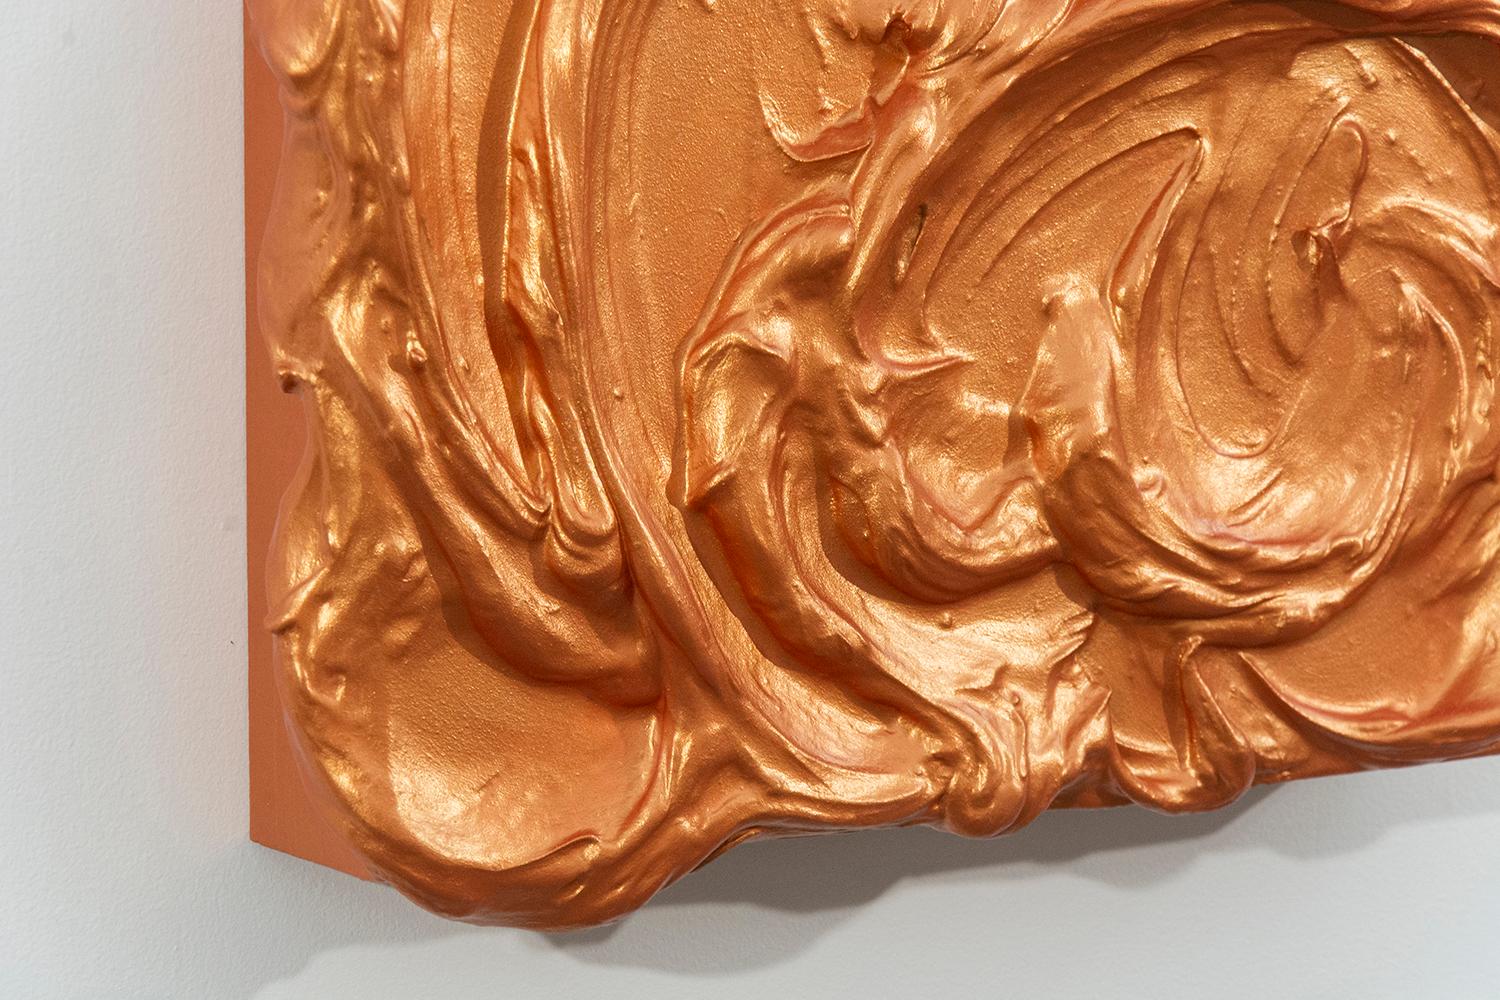 Auf diesem Storm Surge-Gemälde von Shayne Dark wirbeln dicke Wirbel in metallischem Orange innerhalb der Grenzen der Bildfläche. Die barocke skulpturale Qualität des Werks wird durch seinen monochromen, reflektierenden Glanz noch verstärkt.  Diese